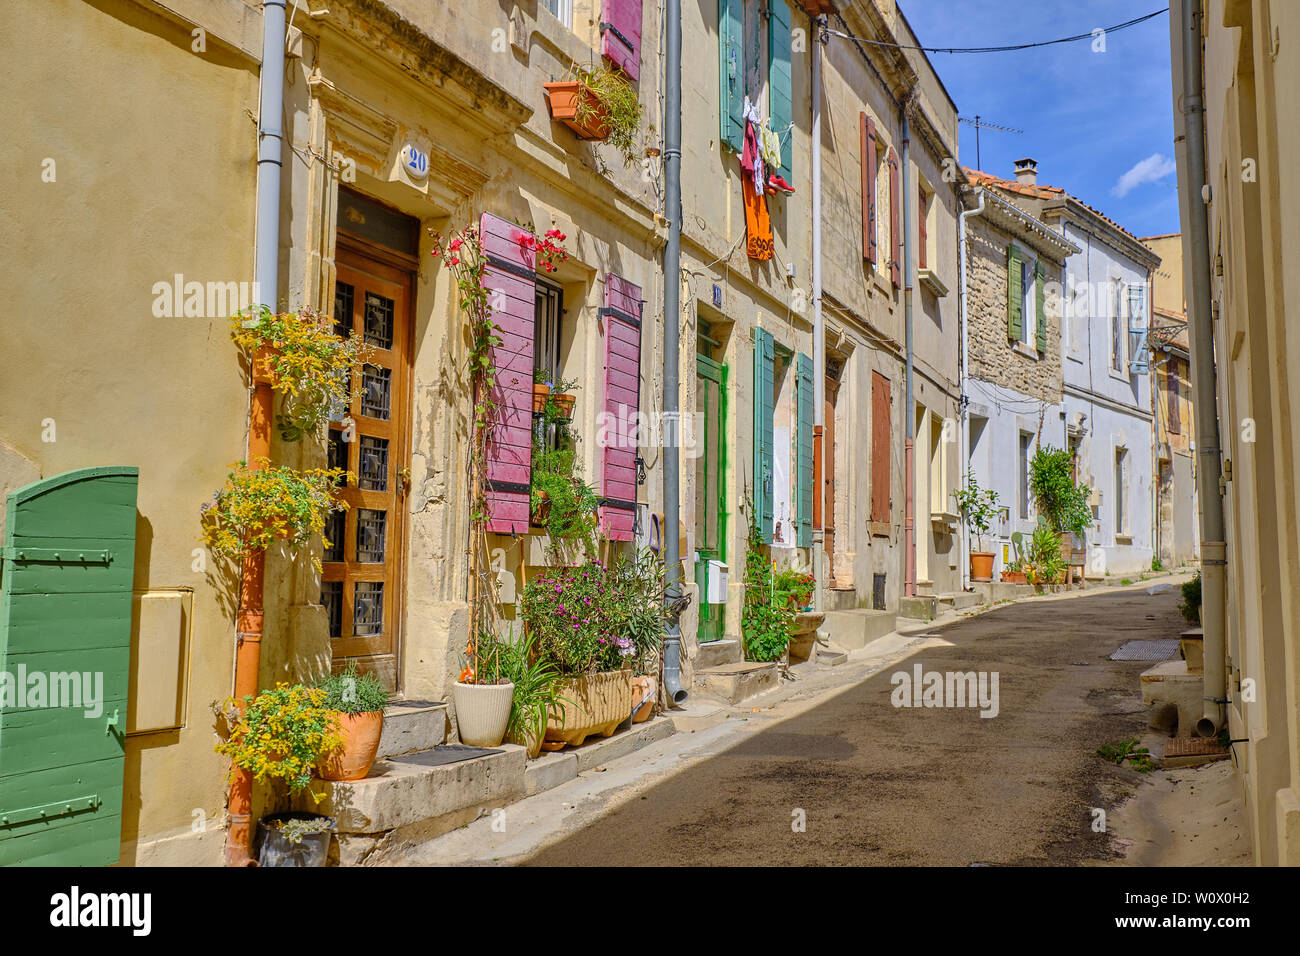 Rue typique de la vieille partie d'Arles, aux volets colorés et des portes,  de plantes suspendues et de blanchisserie sur une journée ensoleillée. Arles,  France Photo Stock - Alamy